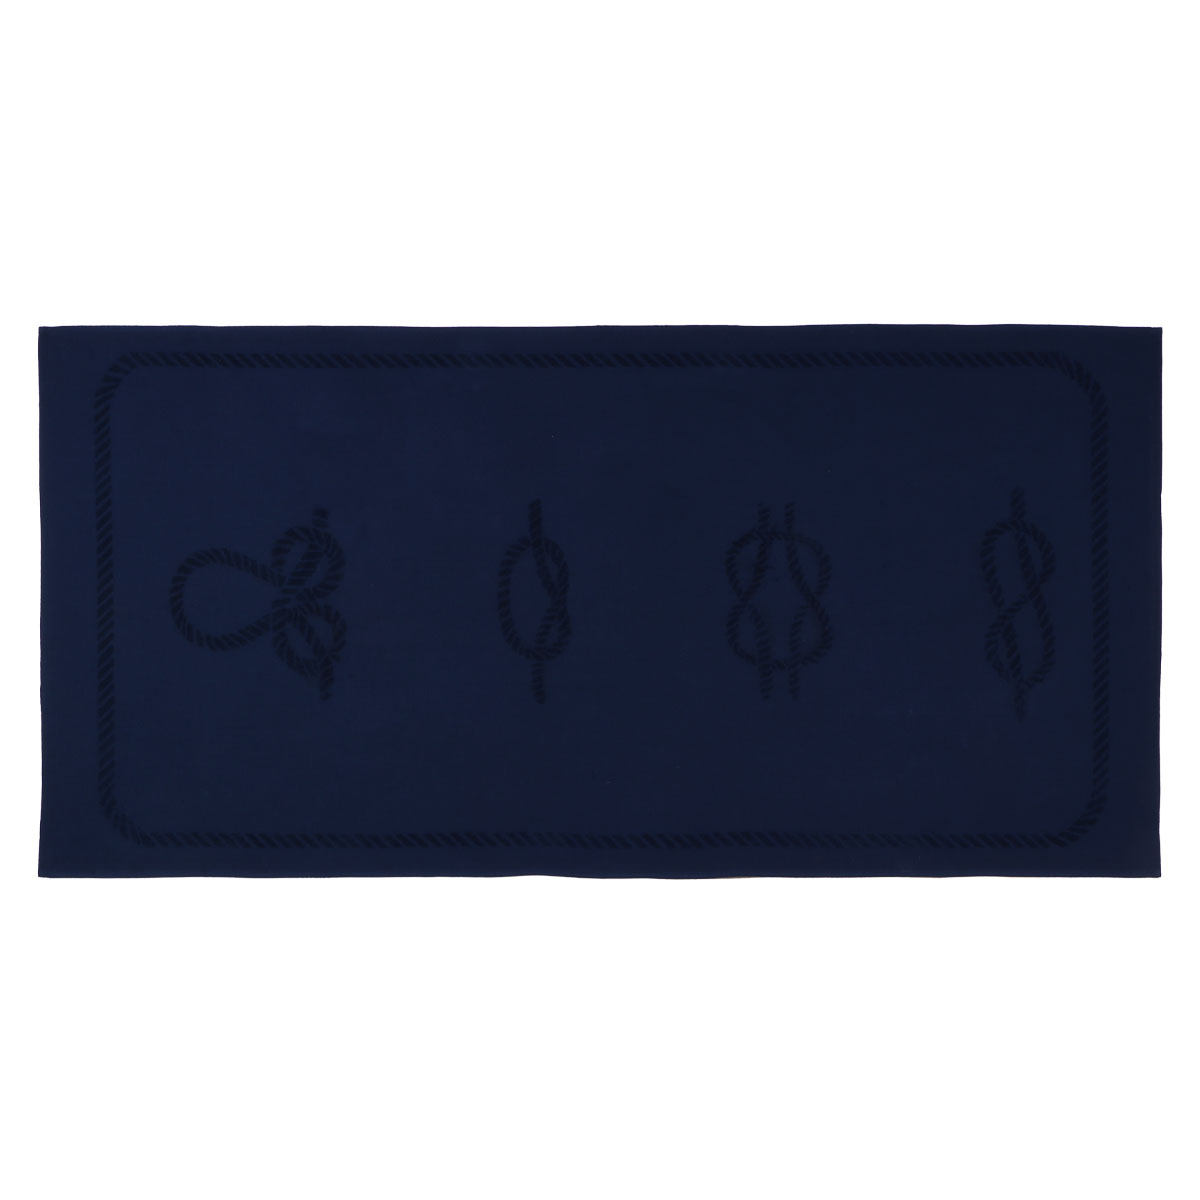 Anemoss sailor knot beach towel navy blue